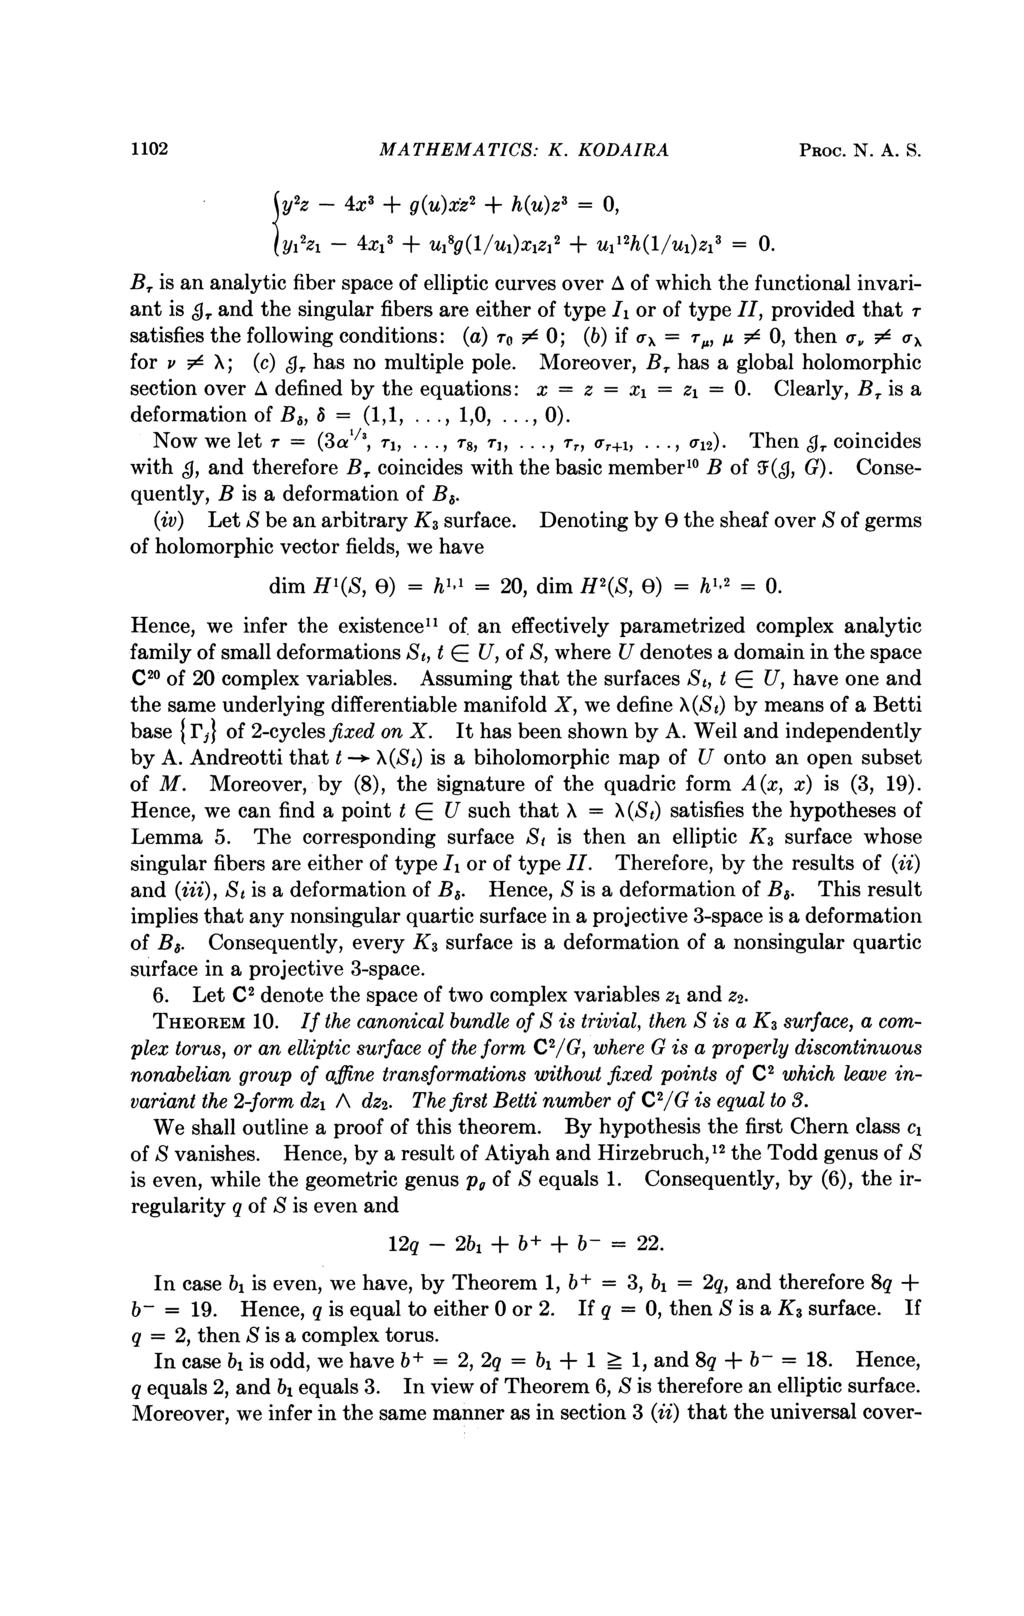 1102 MATHEMATICS: K. KODAIRA PROC. N. A. S. y2z - 4x3 + g(u)xz' + h(u)z' = 0, yi Iz1-4x,1+ Ul8g(1/U,)XZ,2 + u112h(1/u,)z,3 = 0. B.